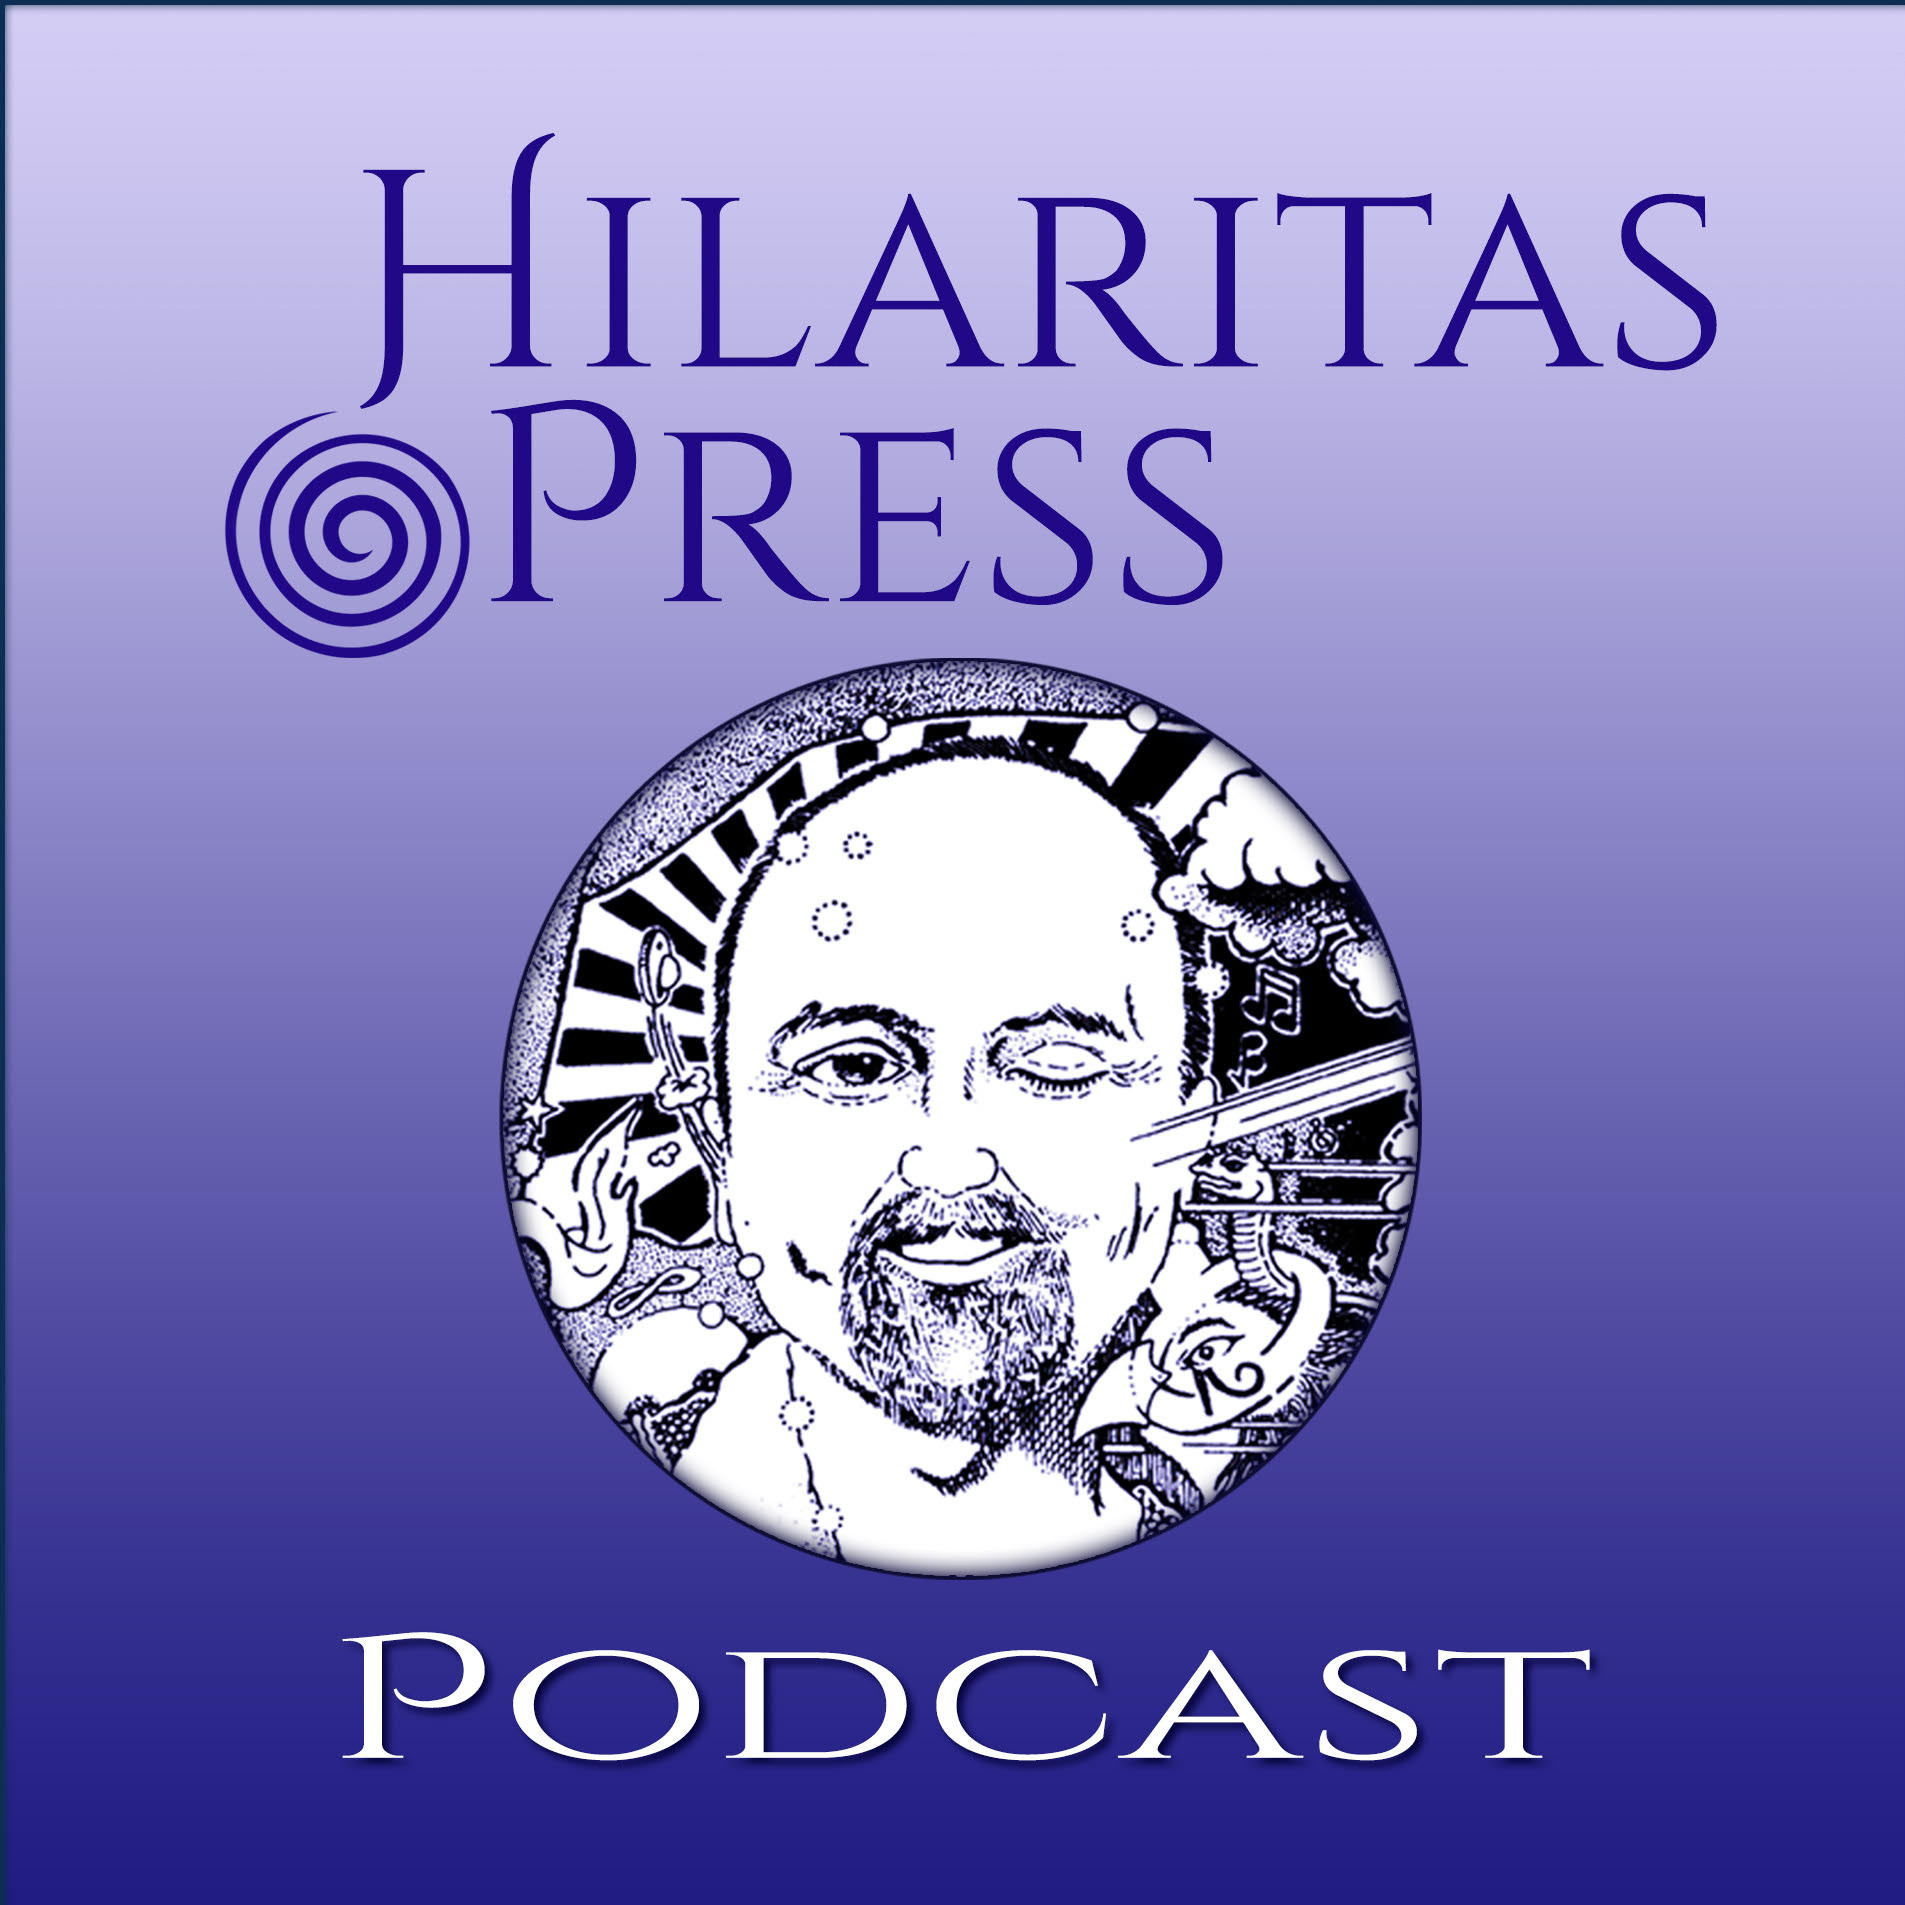 Hilaritas Press Podcasts